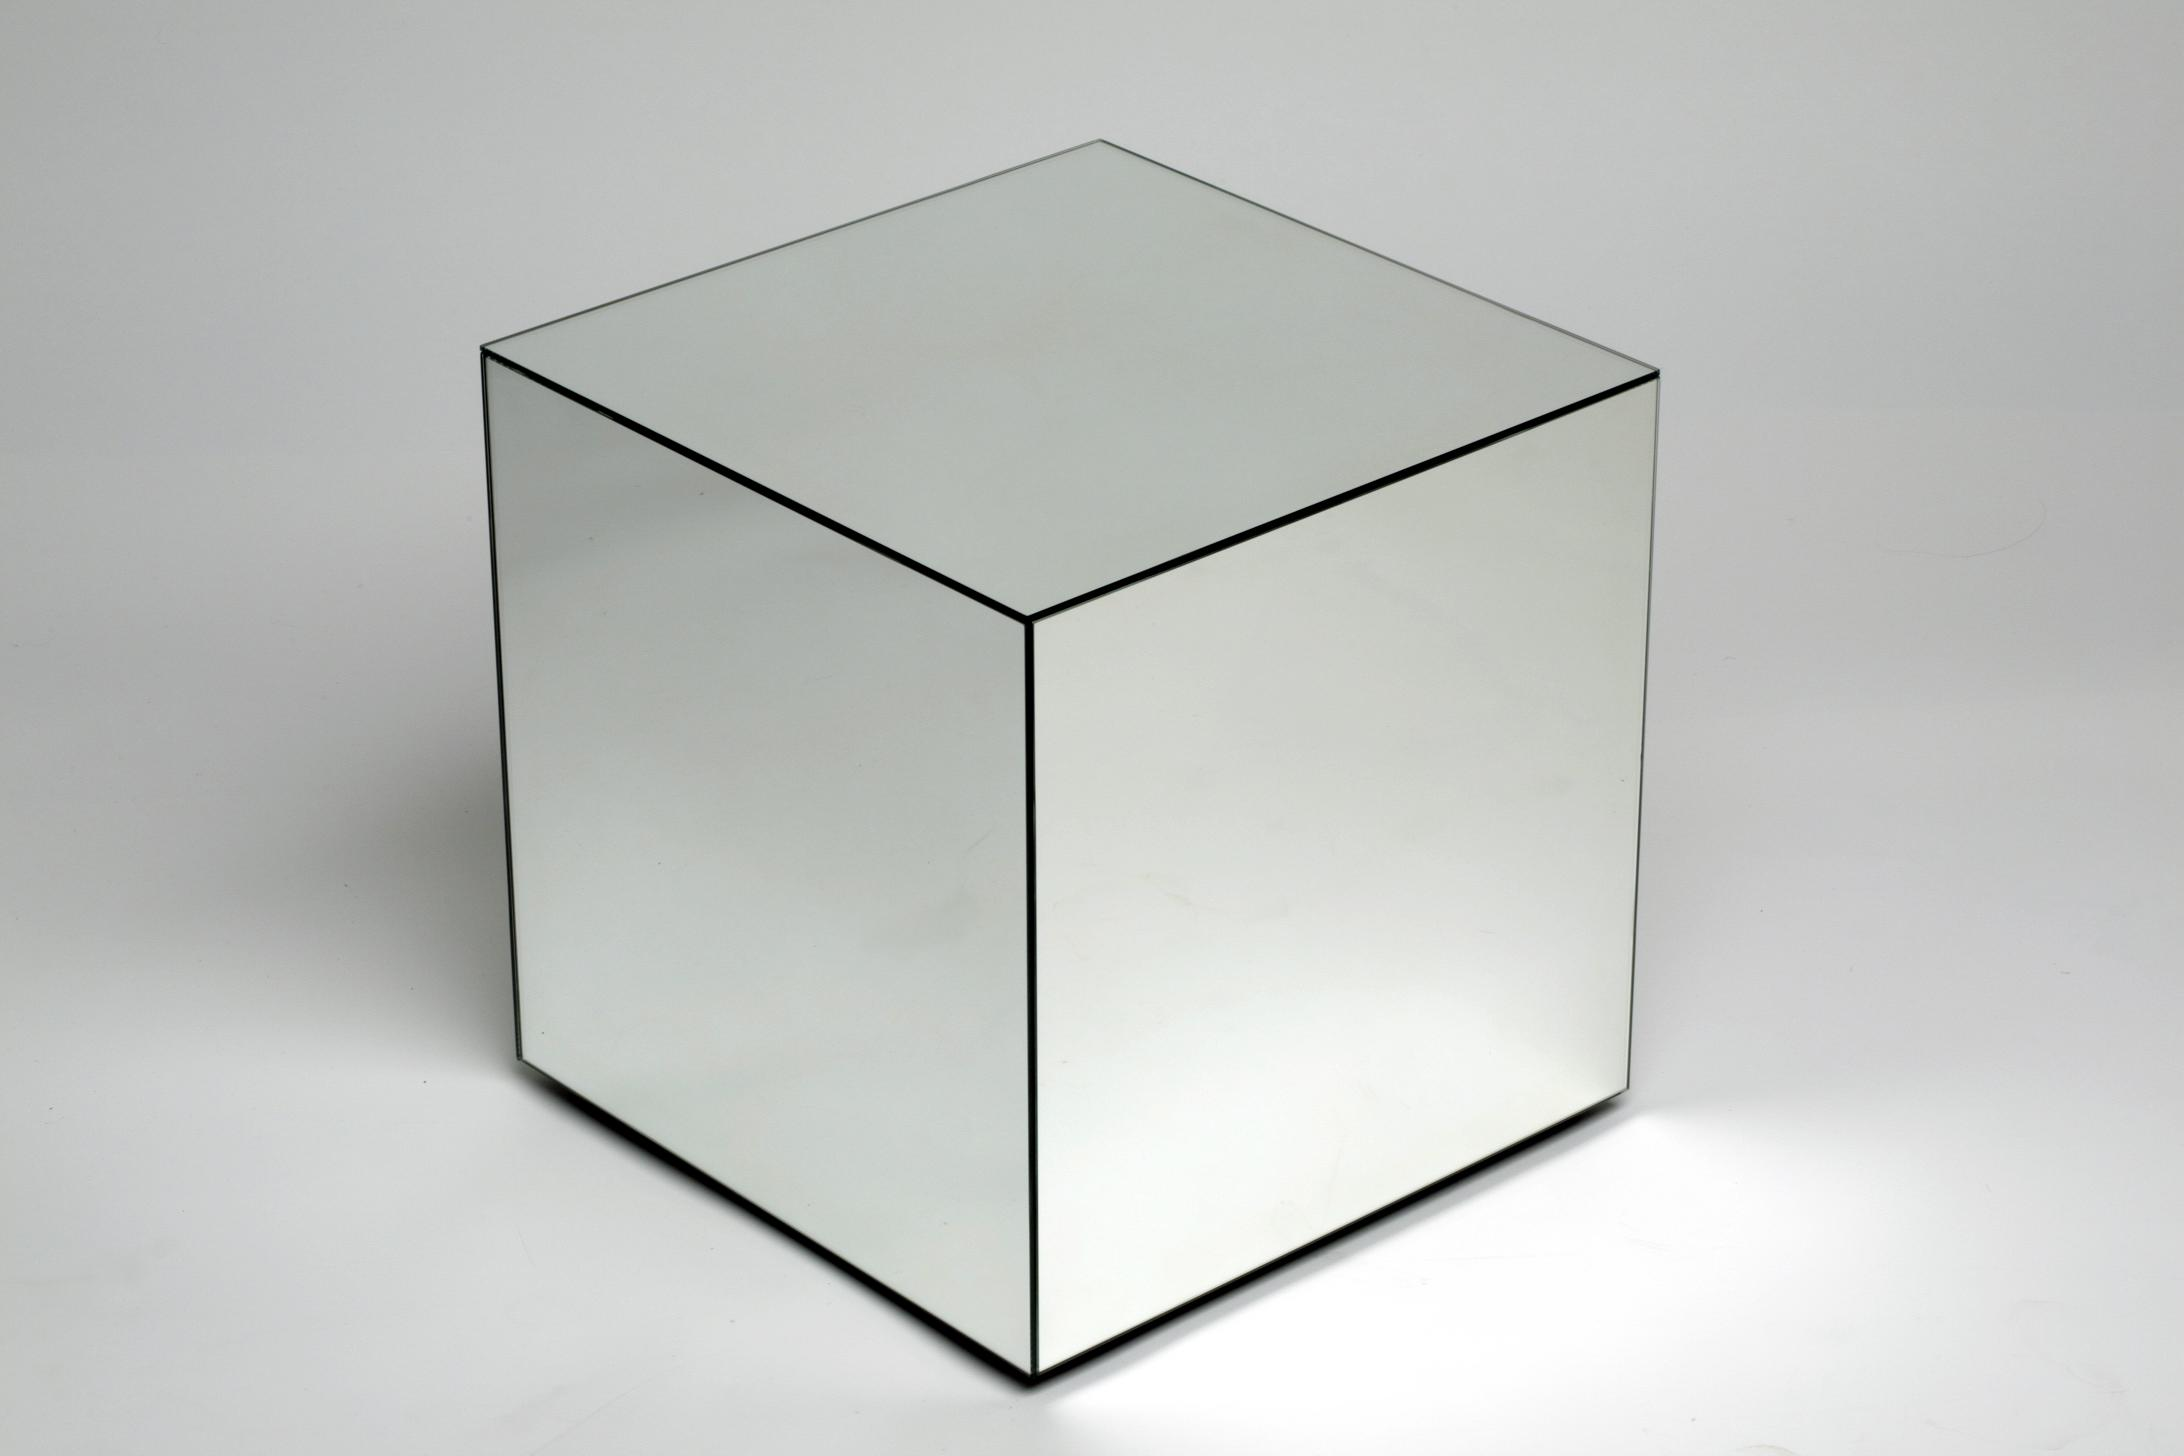 Куб. Миррор Кьюб. Cube Ash (куб аш). Прозрачный куб. Трёхмерный куб.